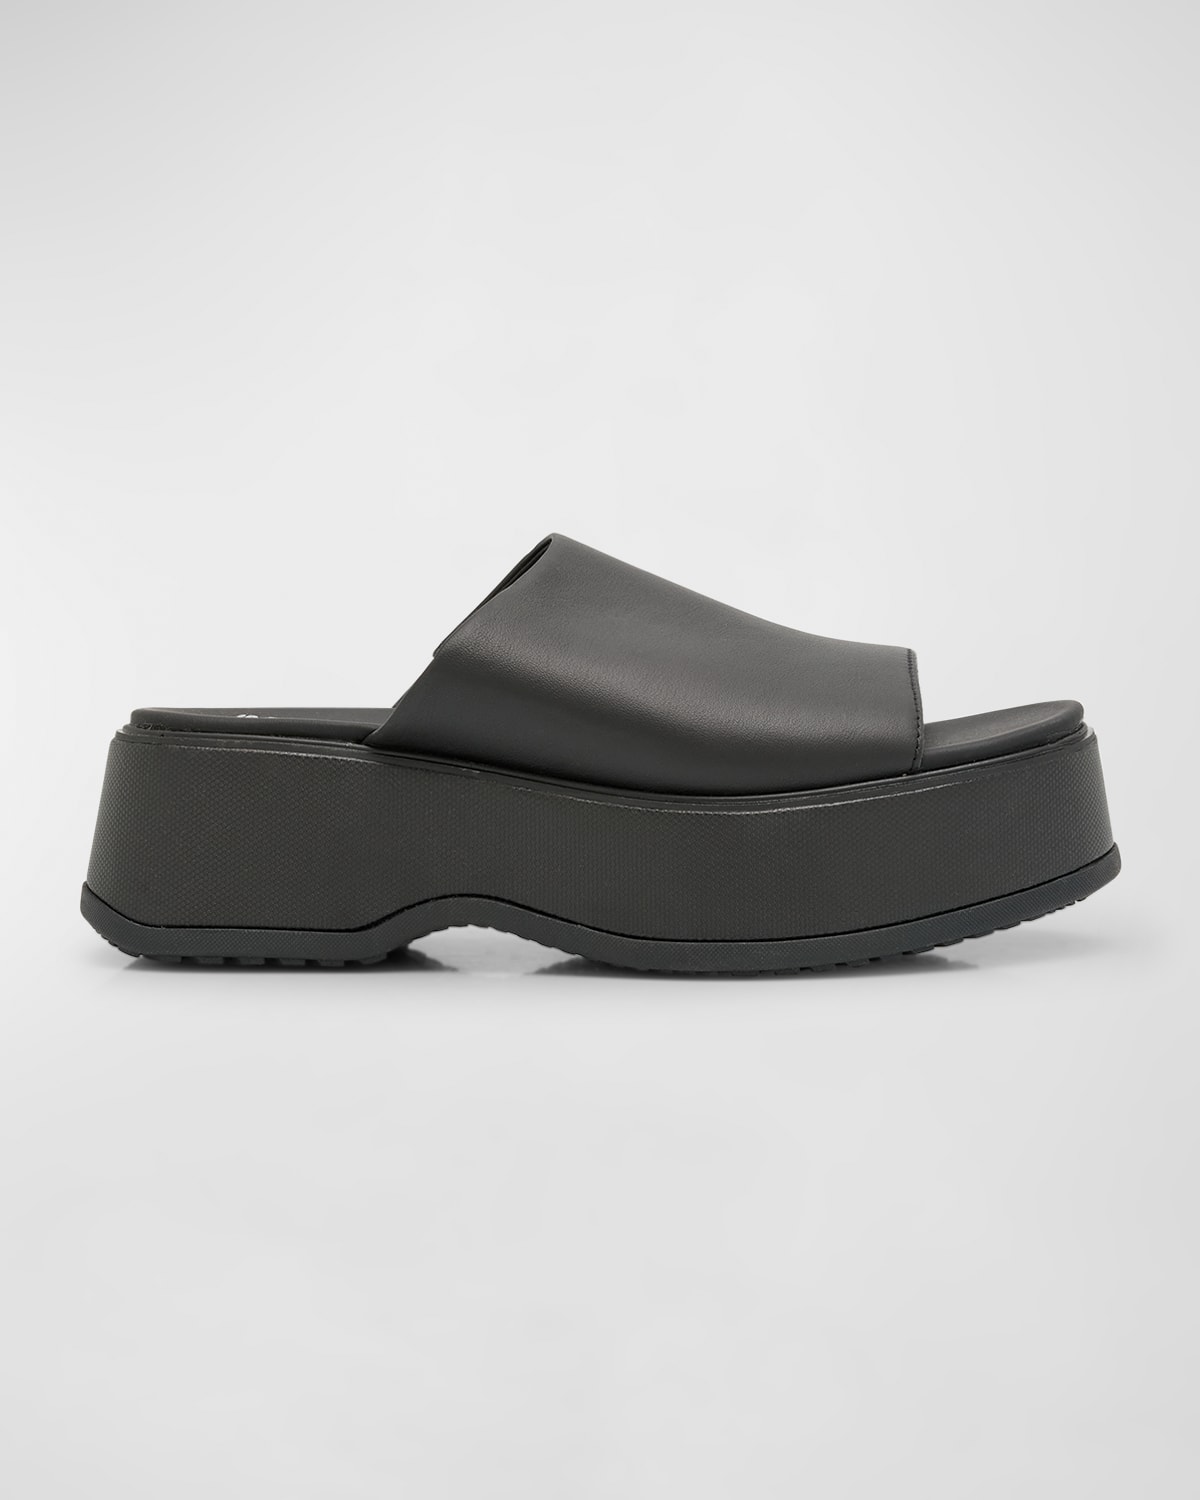 Dayspring Leather Platform Slide Sandals